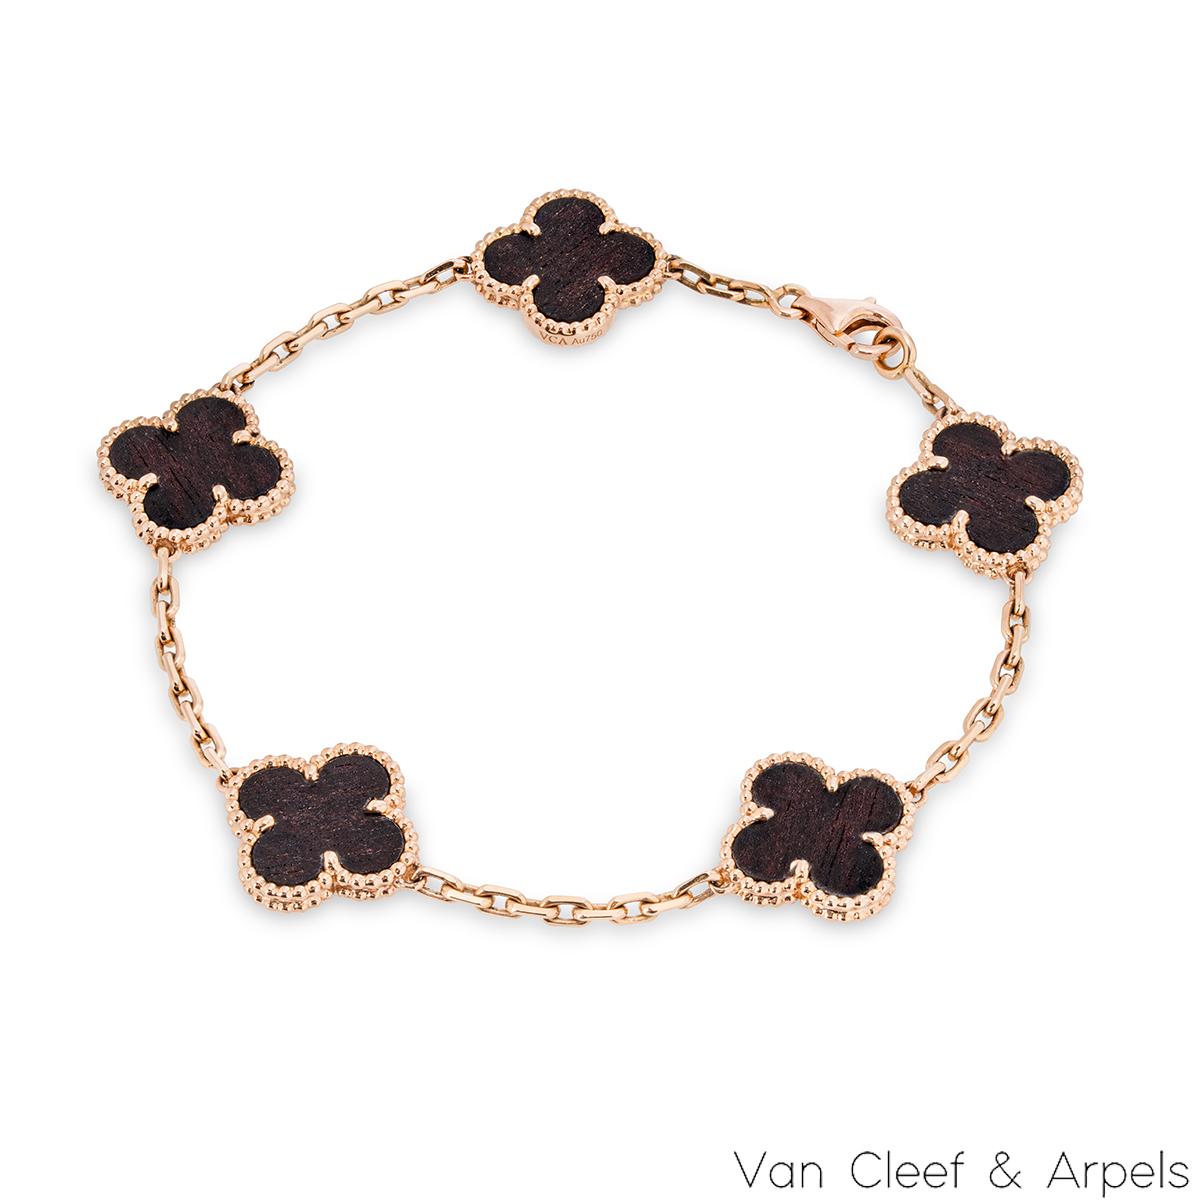 Un bracelet Alhambra Vintage en bois de lettres en édition limitée de Van Cleef & Arpels. Le bracelet présente 5 motifs emblématiques de trèfle à 4 feuilles, chacun étant serti d'un bord perlé et d'une incrustation en bois de lettrage, le tout sur